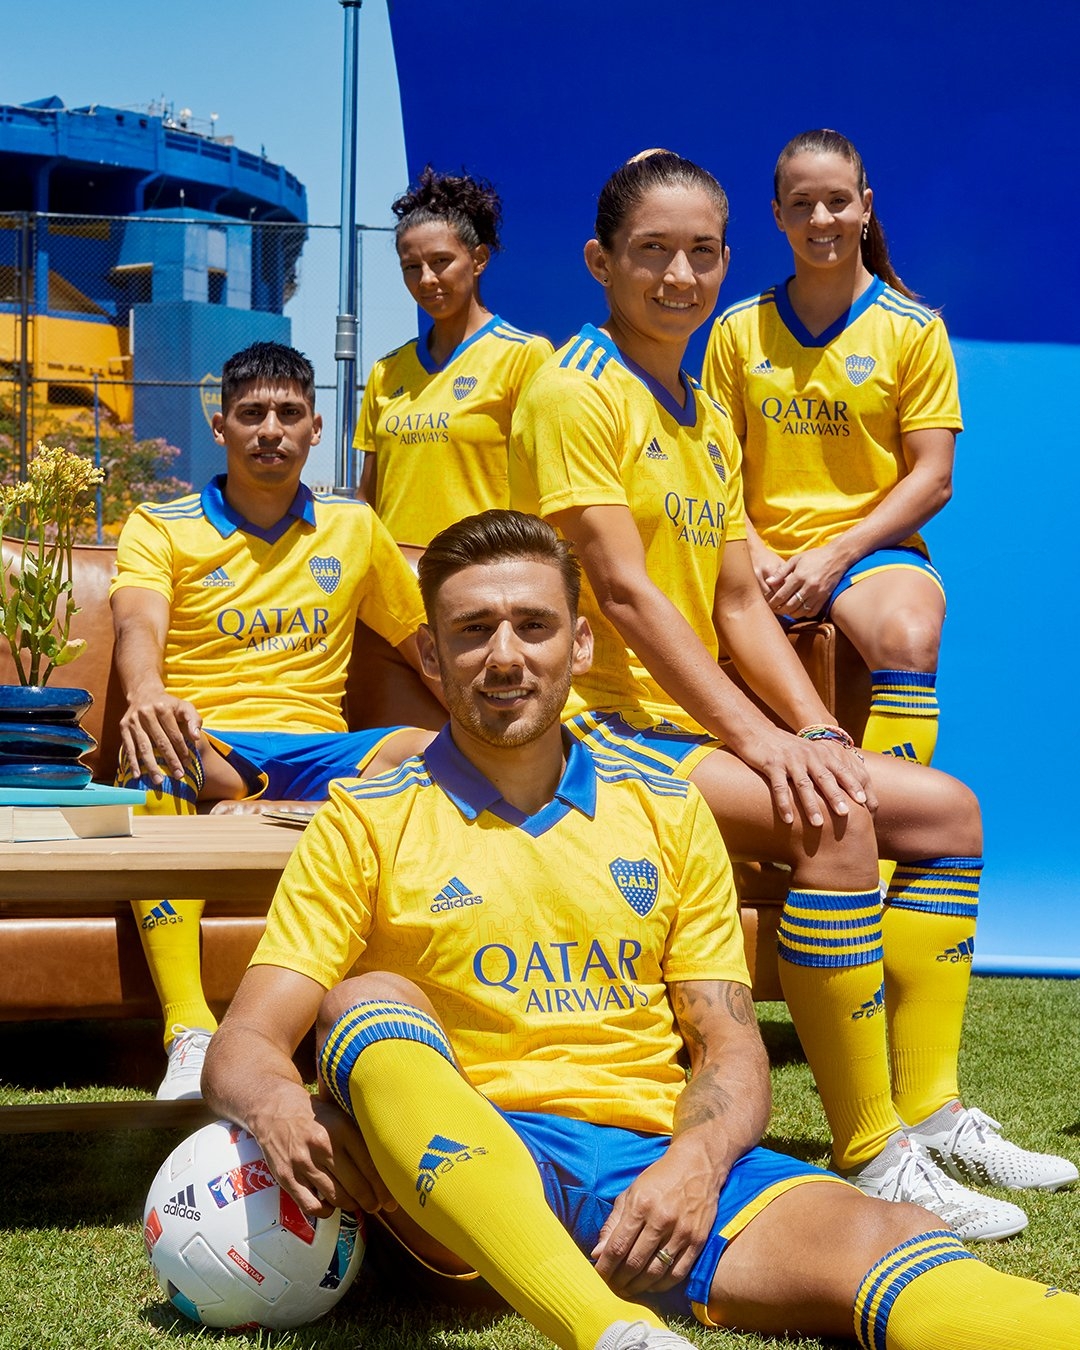 La decisión histórica de Boca para jugar el superclásico | Canal Showsport